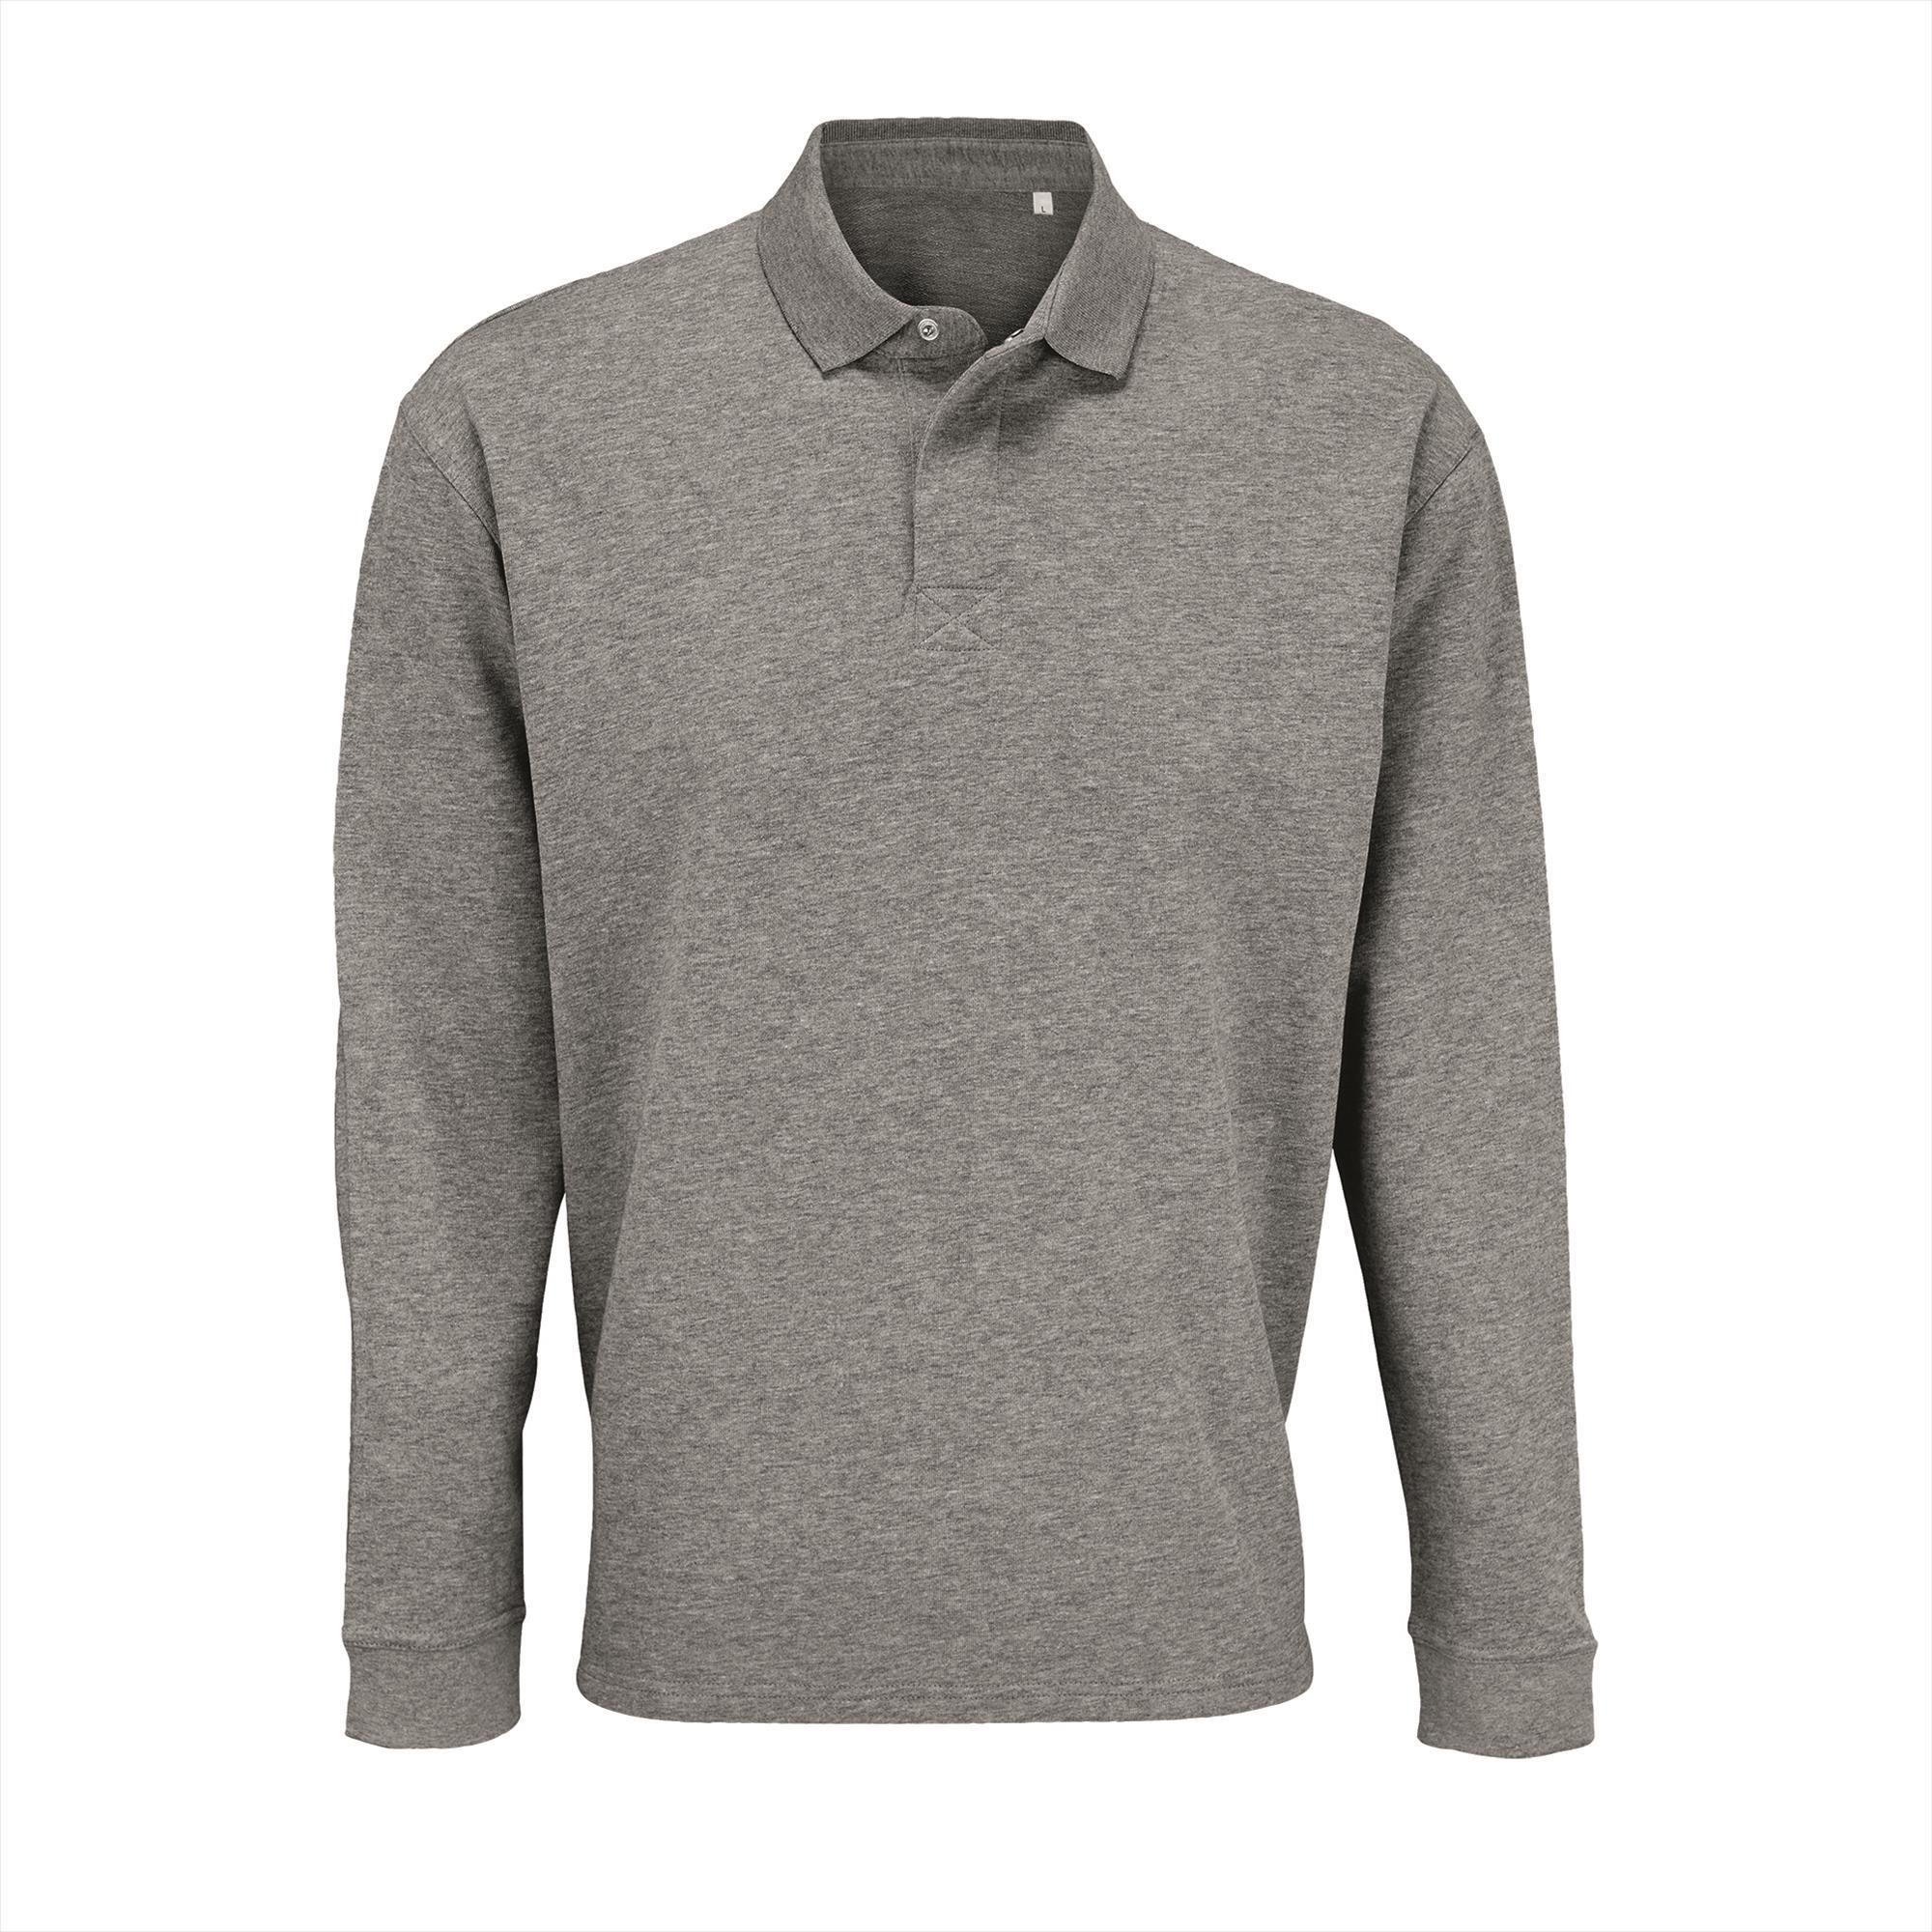 Unisex sweatshirt heren grijs melange duurzaam gerecycled katoen